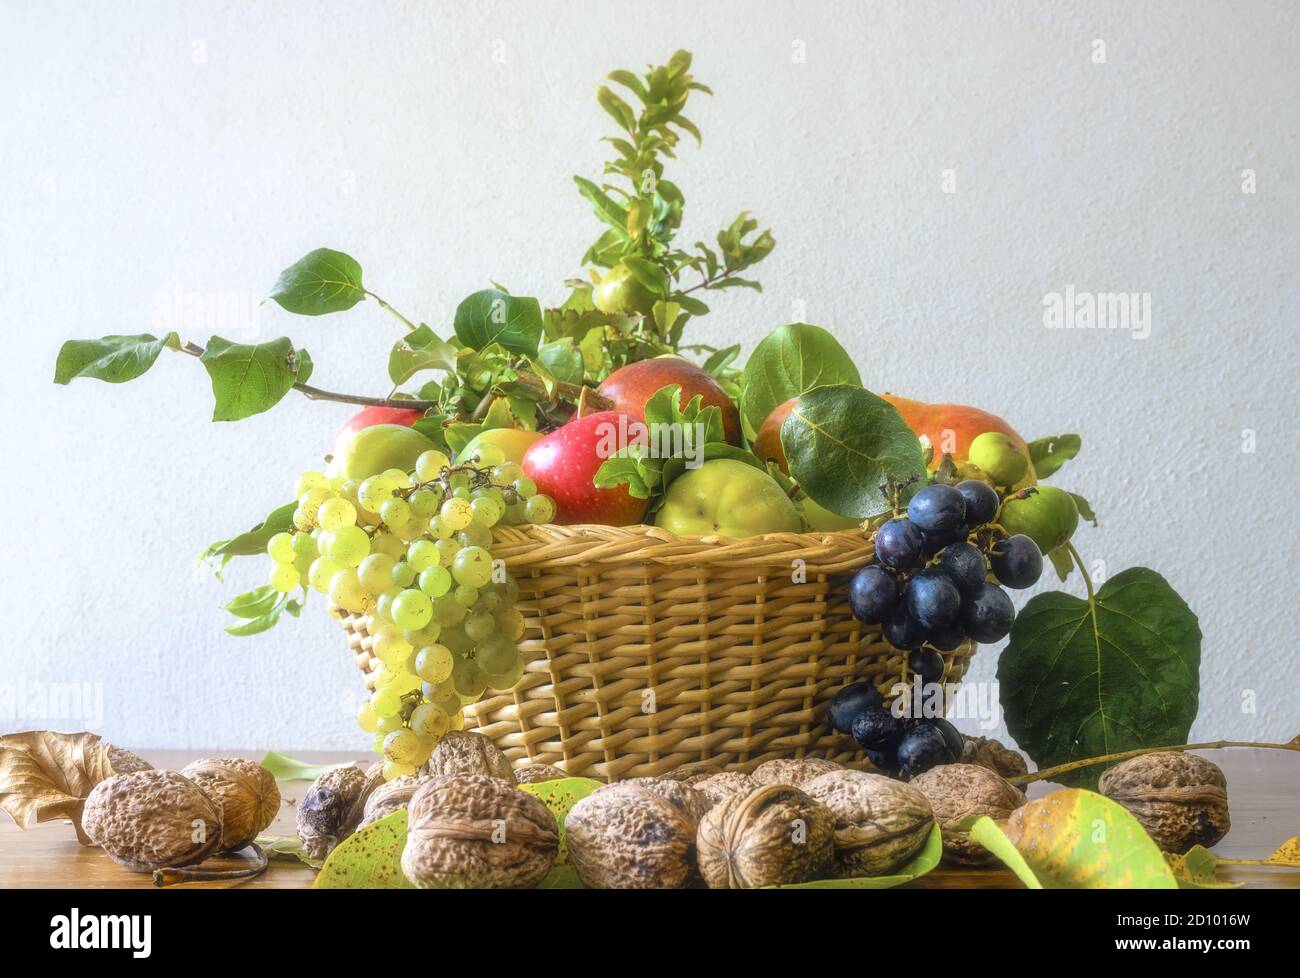 Concetto di natura autunnale, splendido assortimento di frutta in un cesto su un tavolo di legno. Composizione di una varietà di frutti organici crudi. Foto Stock